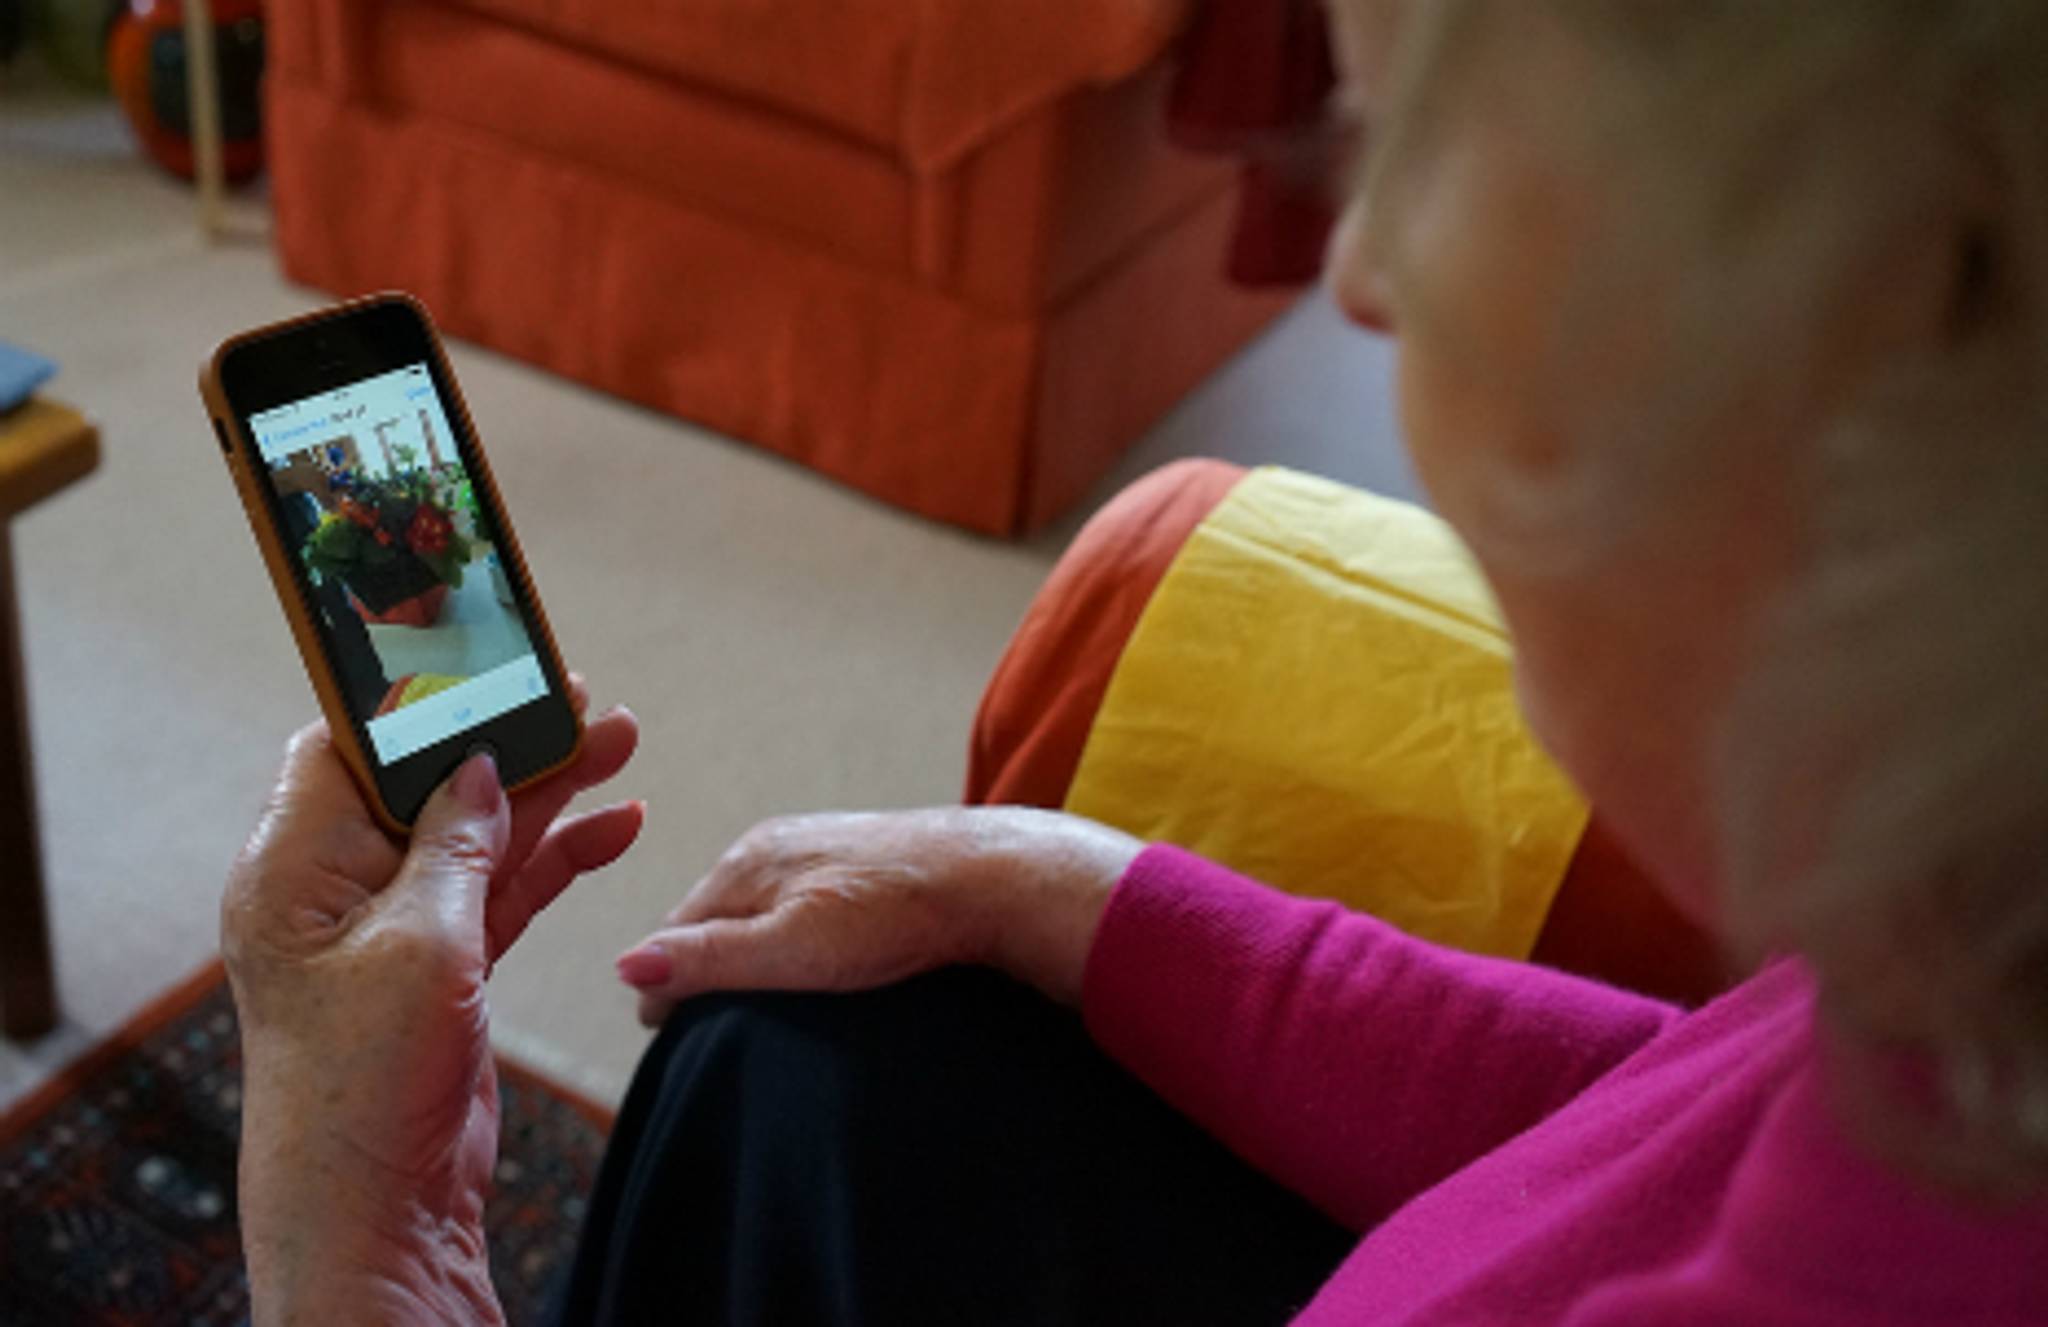 Barclays Digital Eagles: getting grandma online